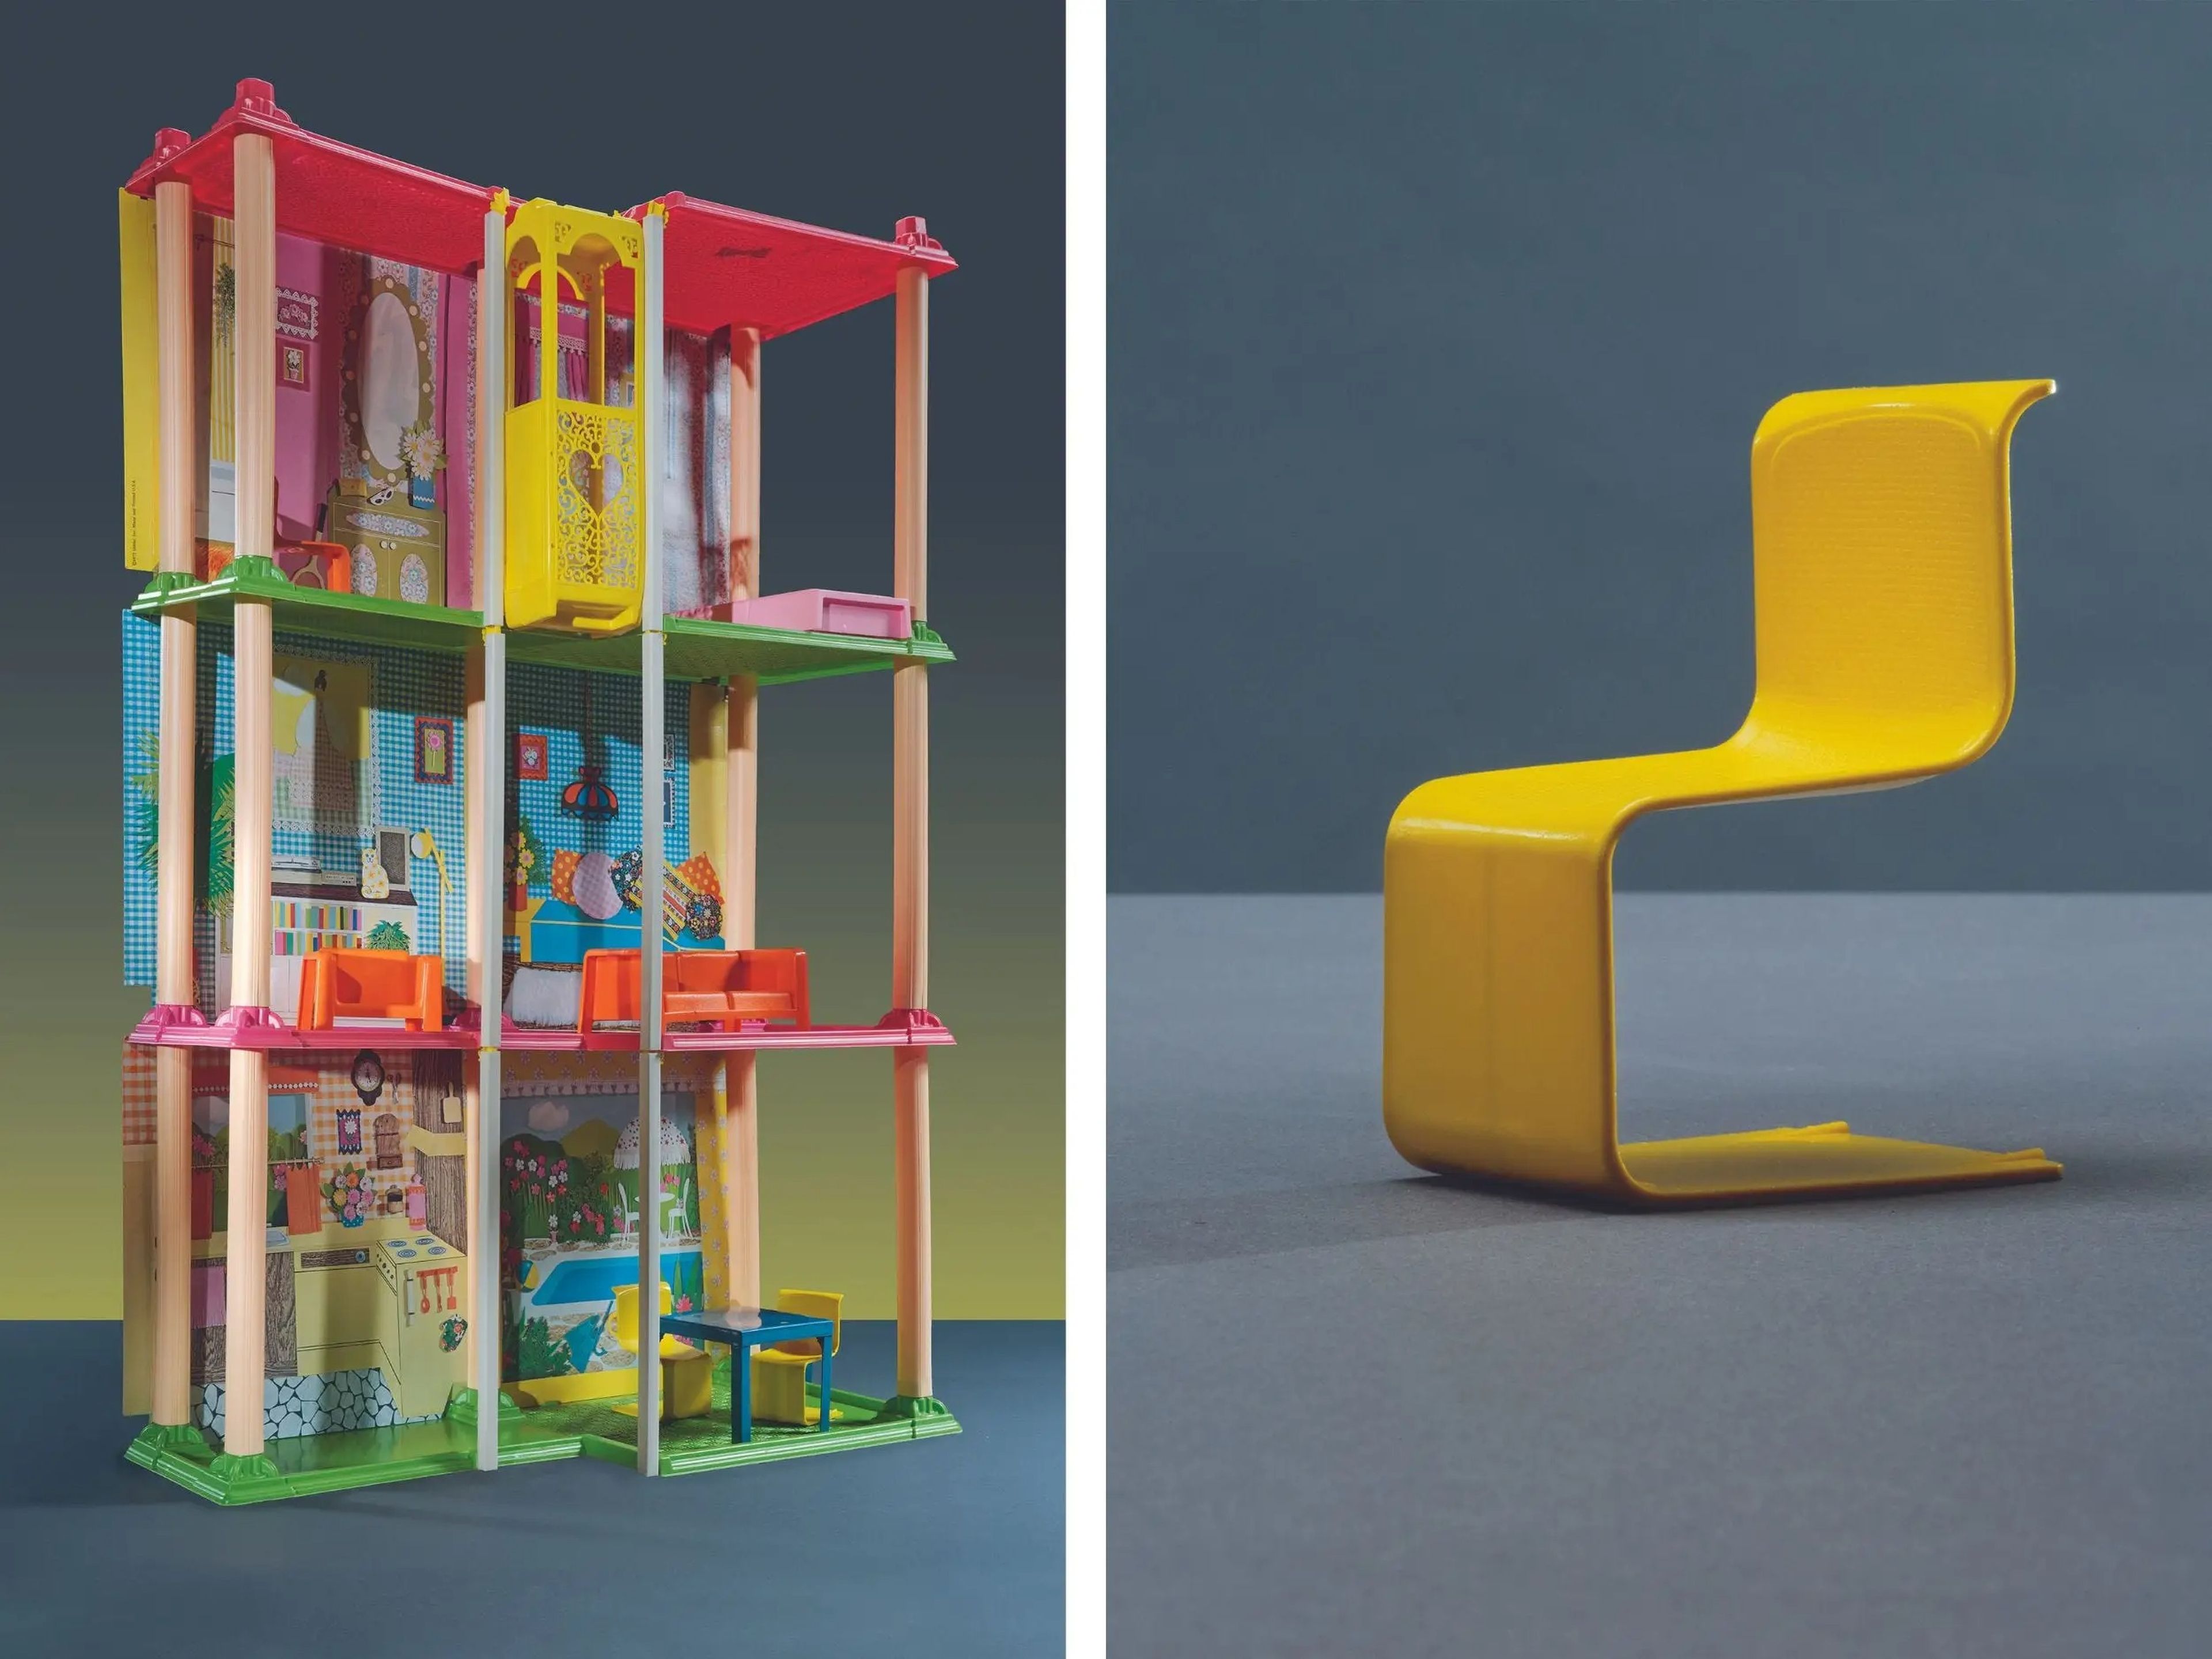 Los muebles de Barbie Townhouse de 1974, a la izquierda, tienen una silla de comedor amarilla que imita las líneas de la silla 'Cesca' del famoso arquitecto Marcel Breuer.